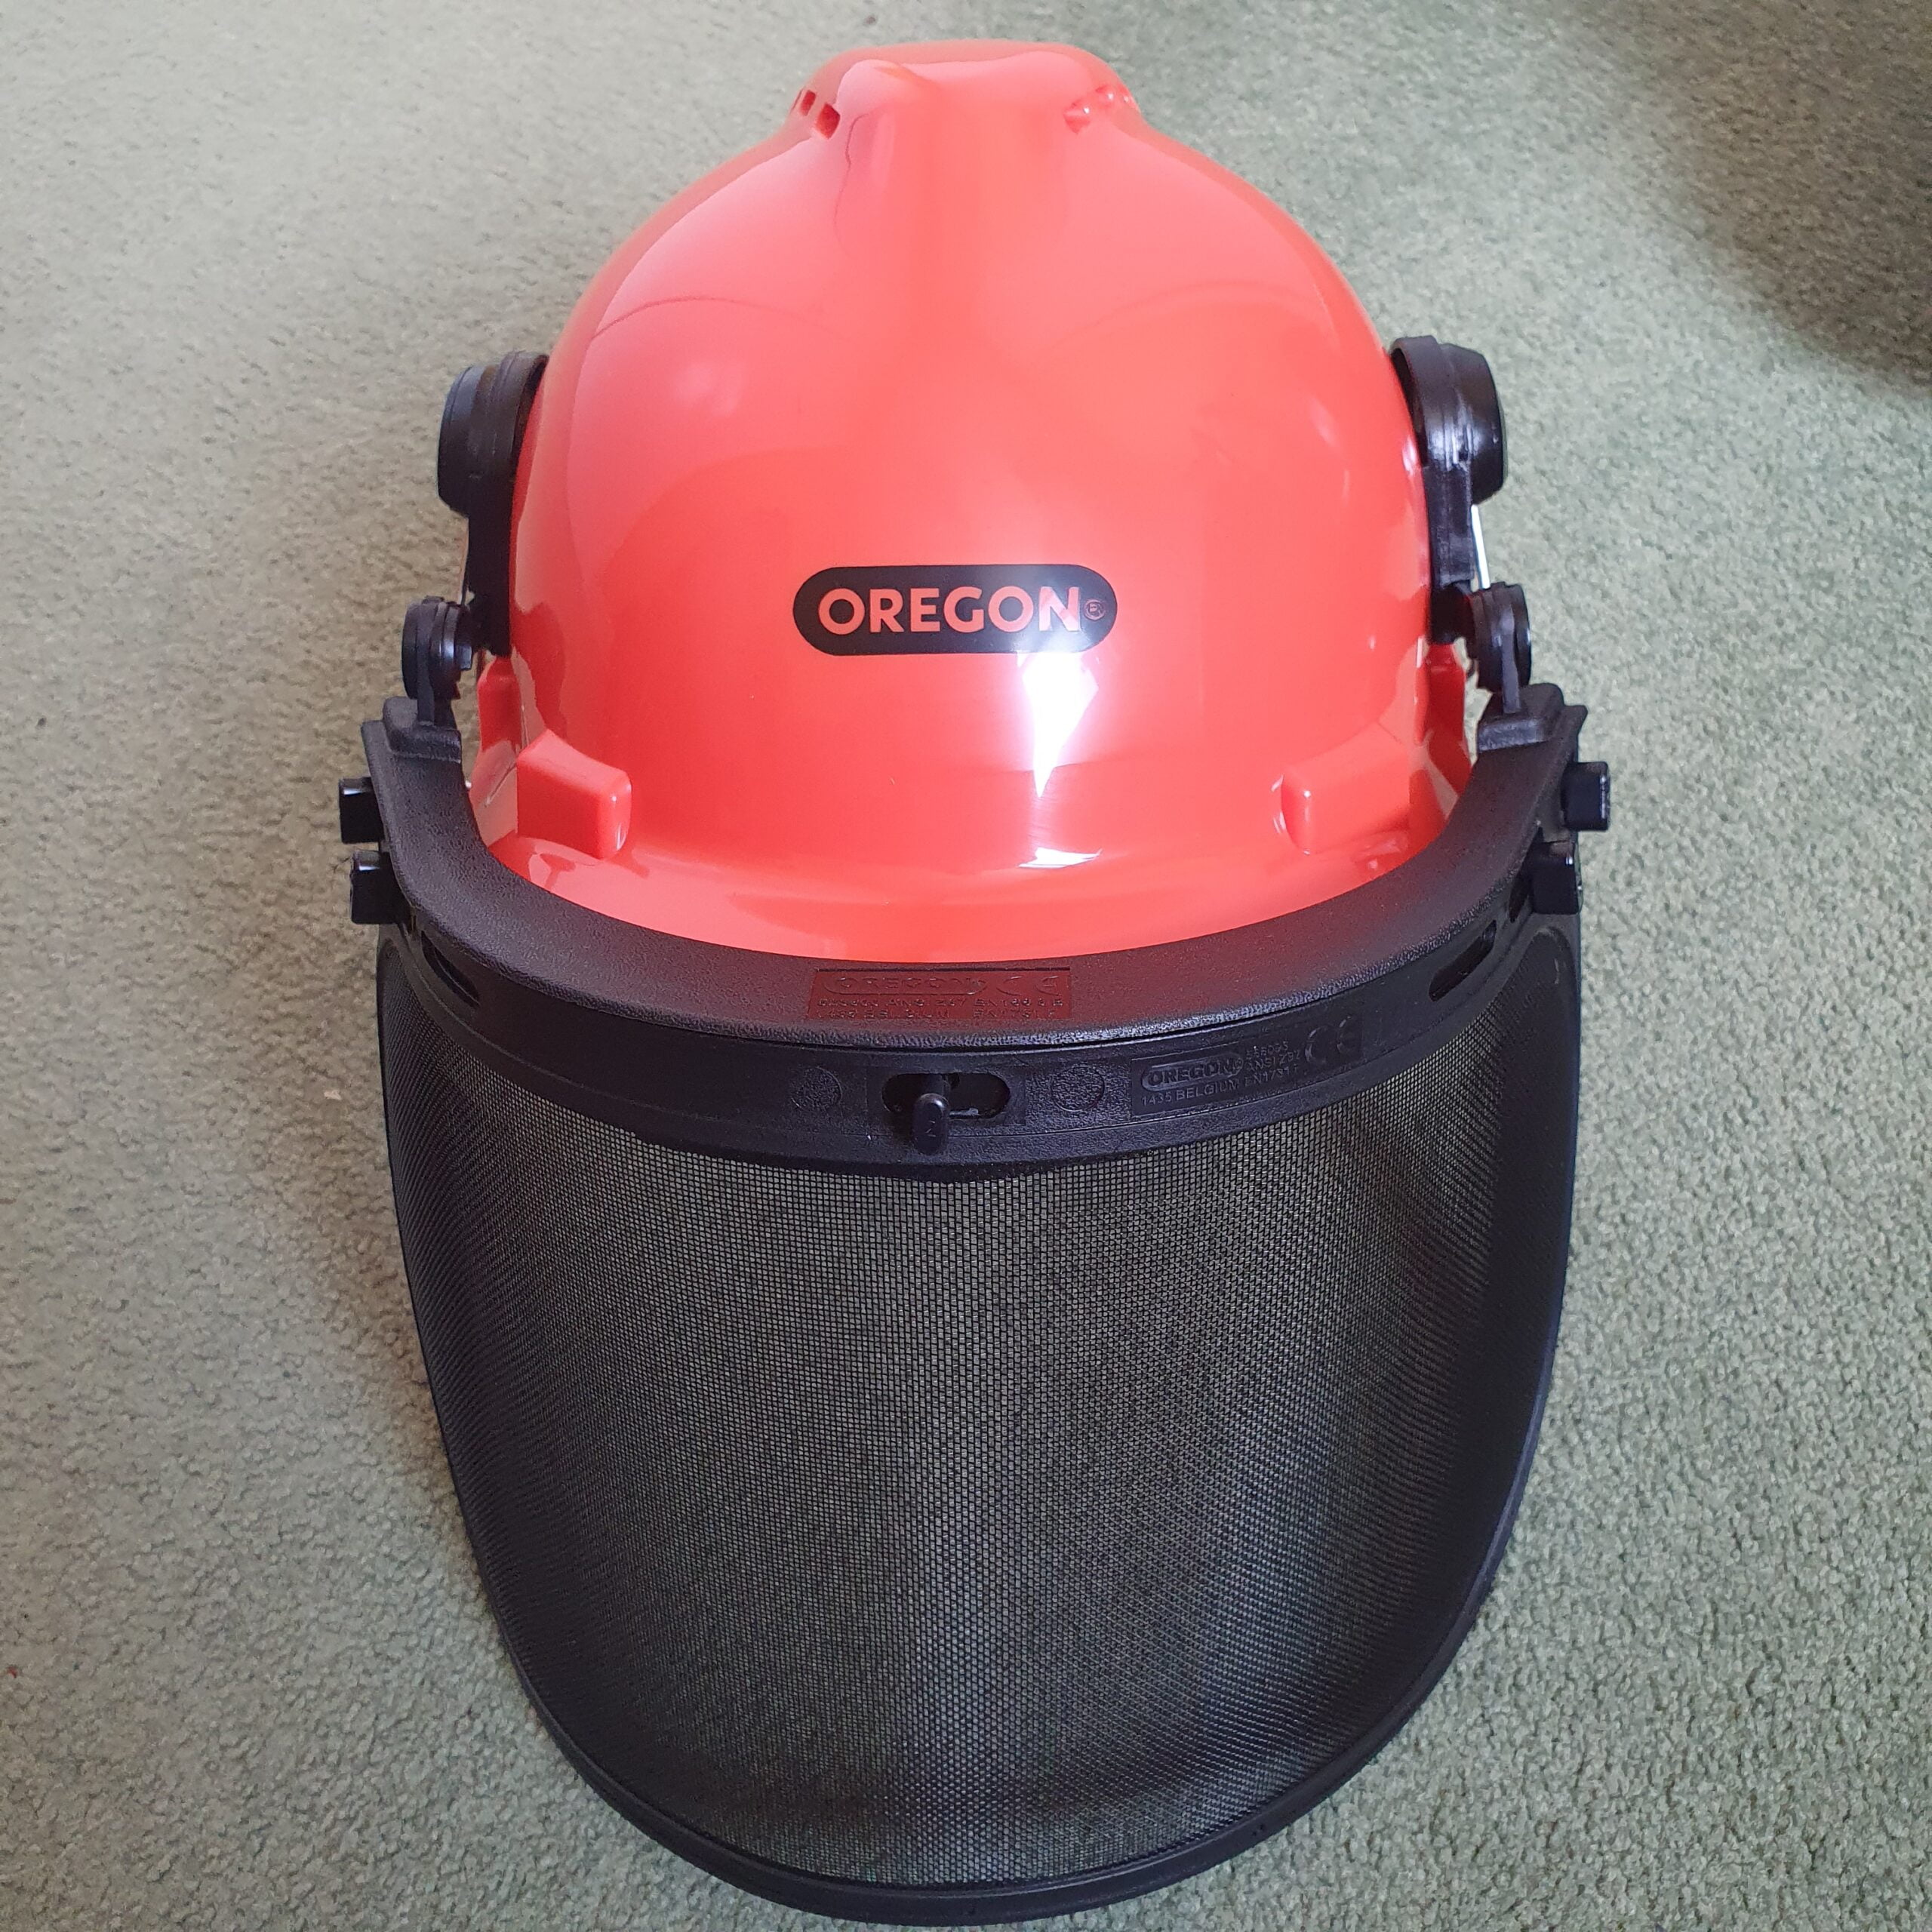 Oregon Chainsaw Safety Helmet - Garden Equipment Review